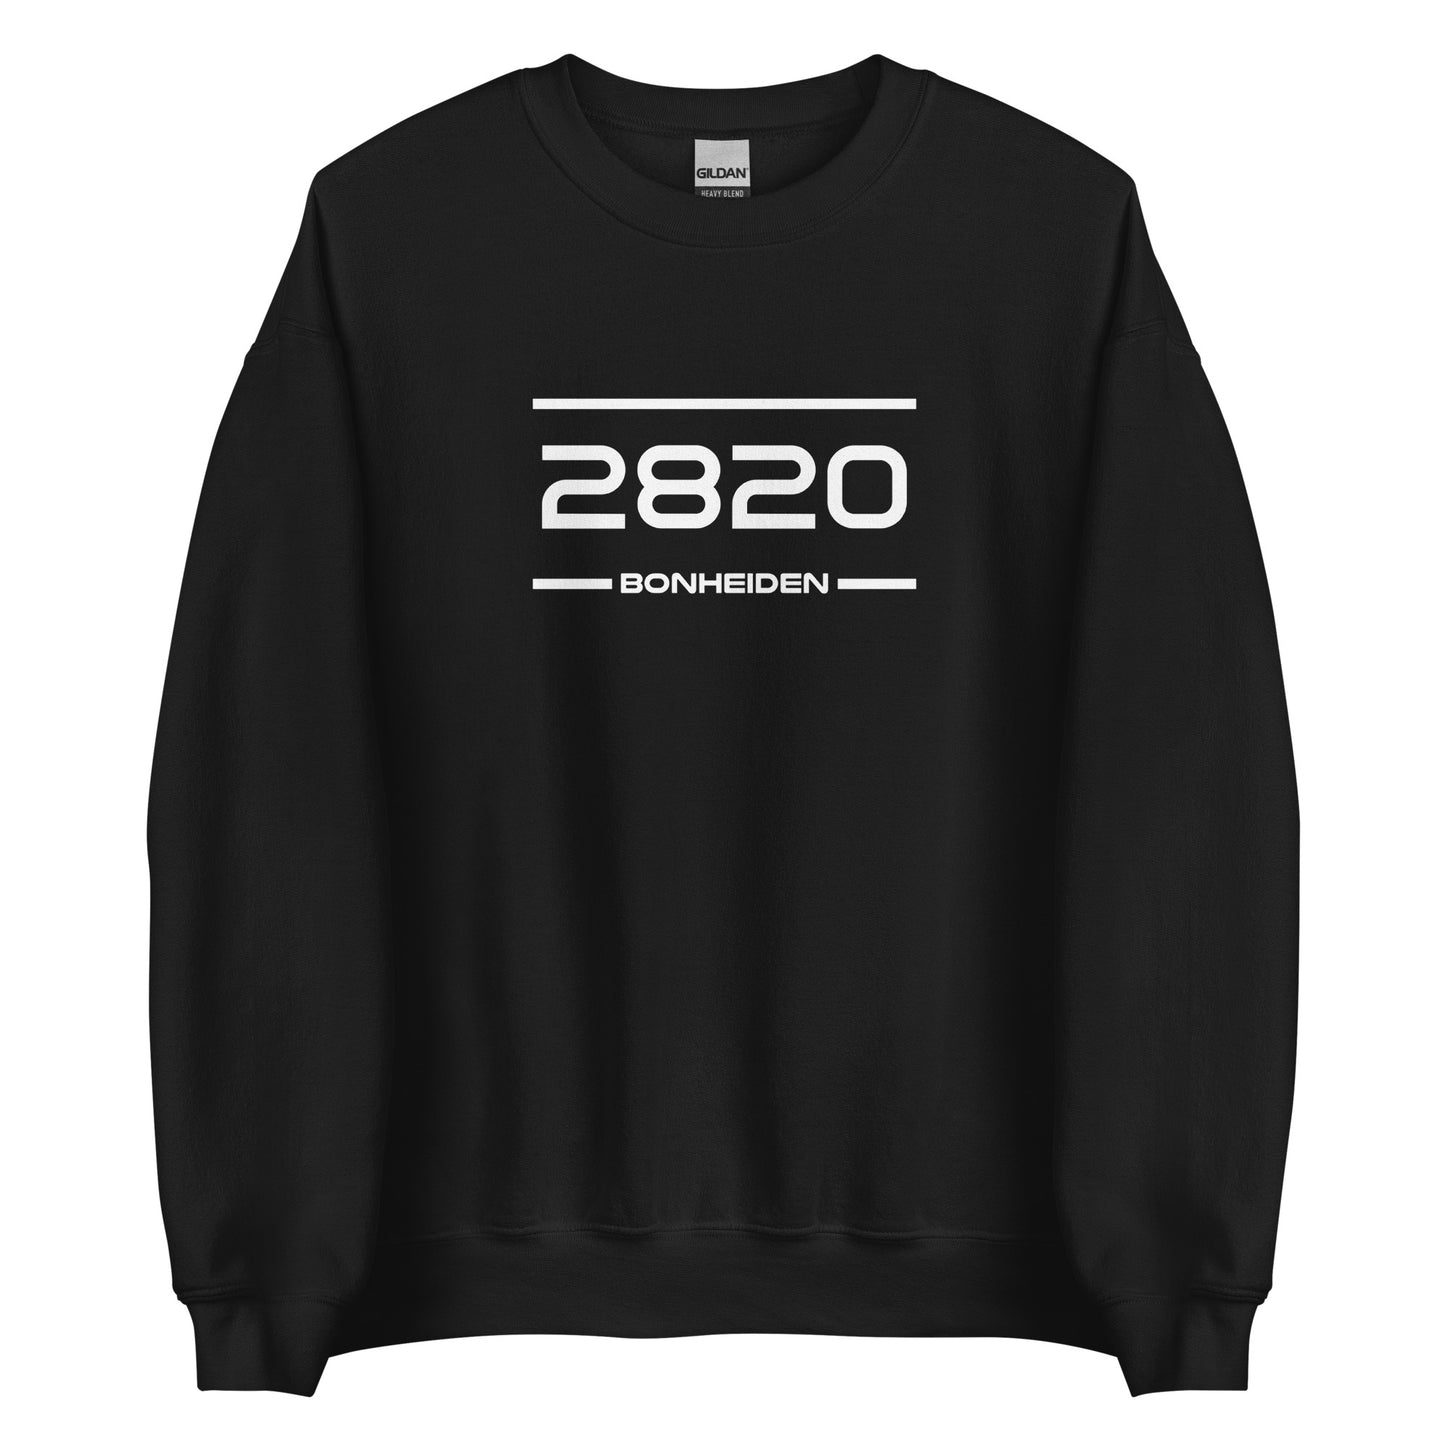 Sweater - 2820 - Bonheiden (M/V)